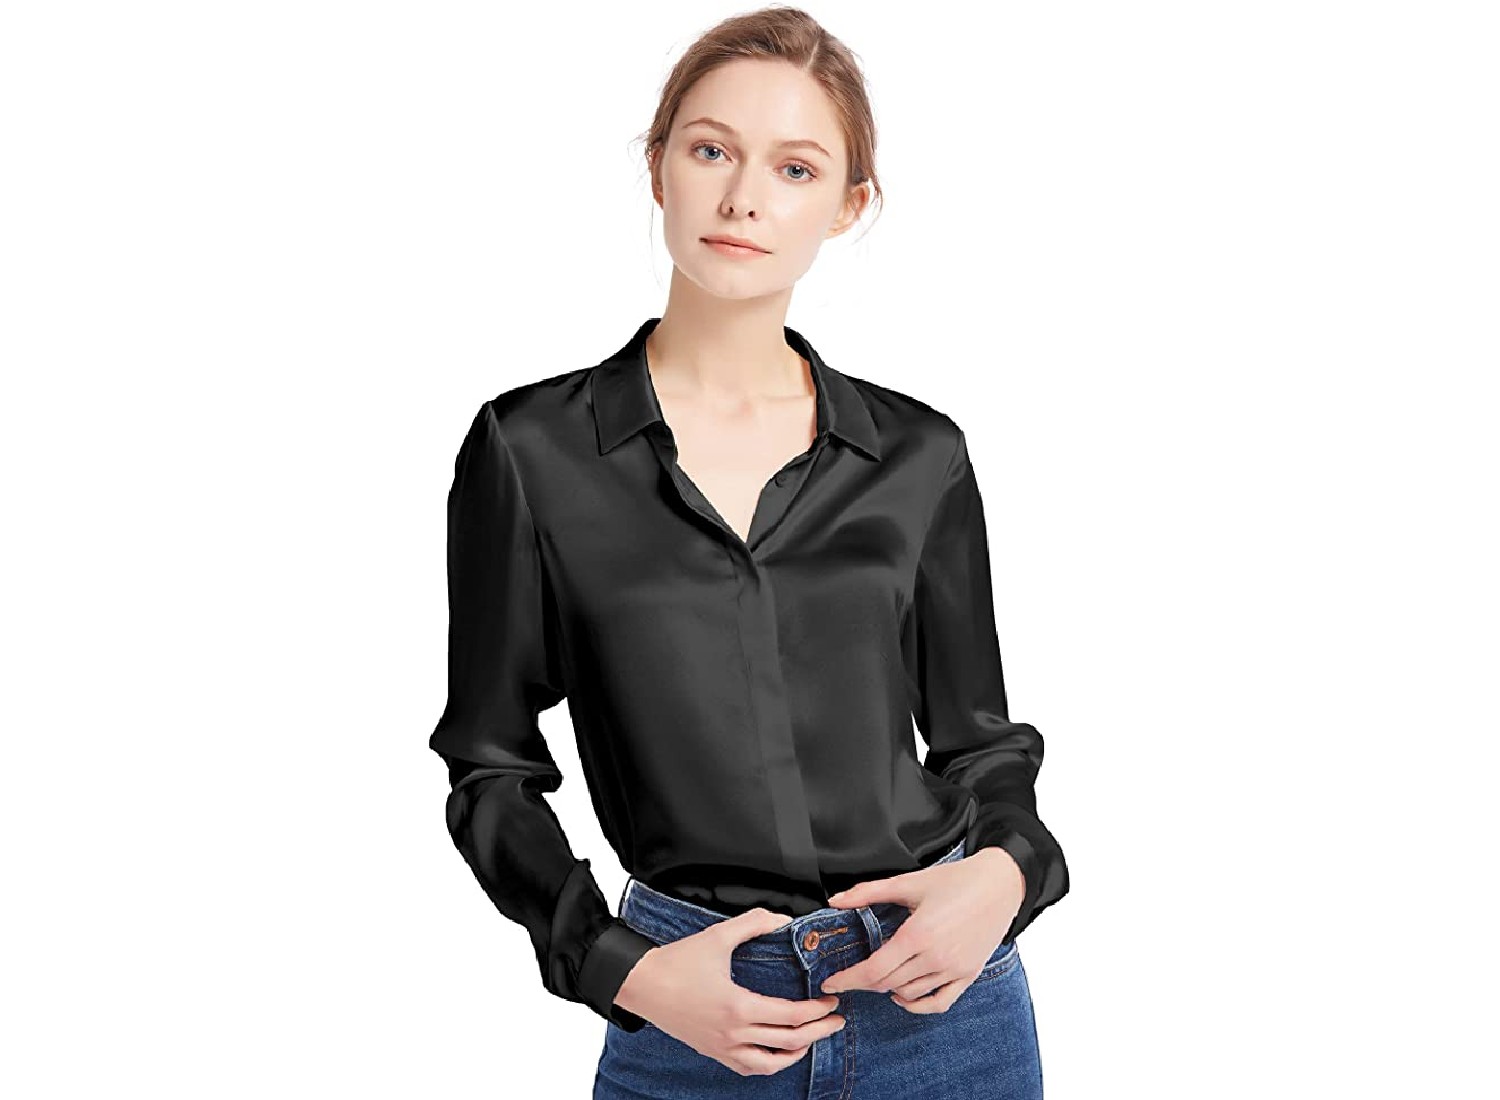 A plain black blouse.